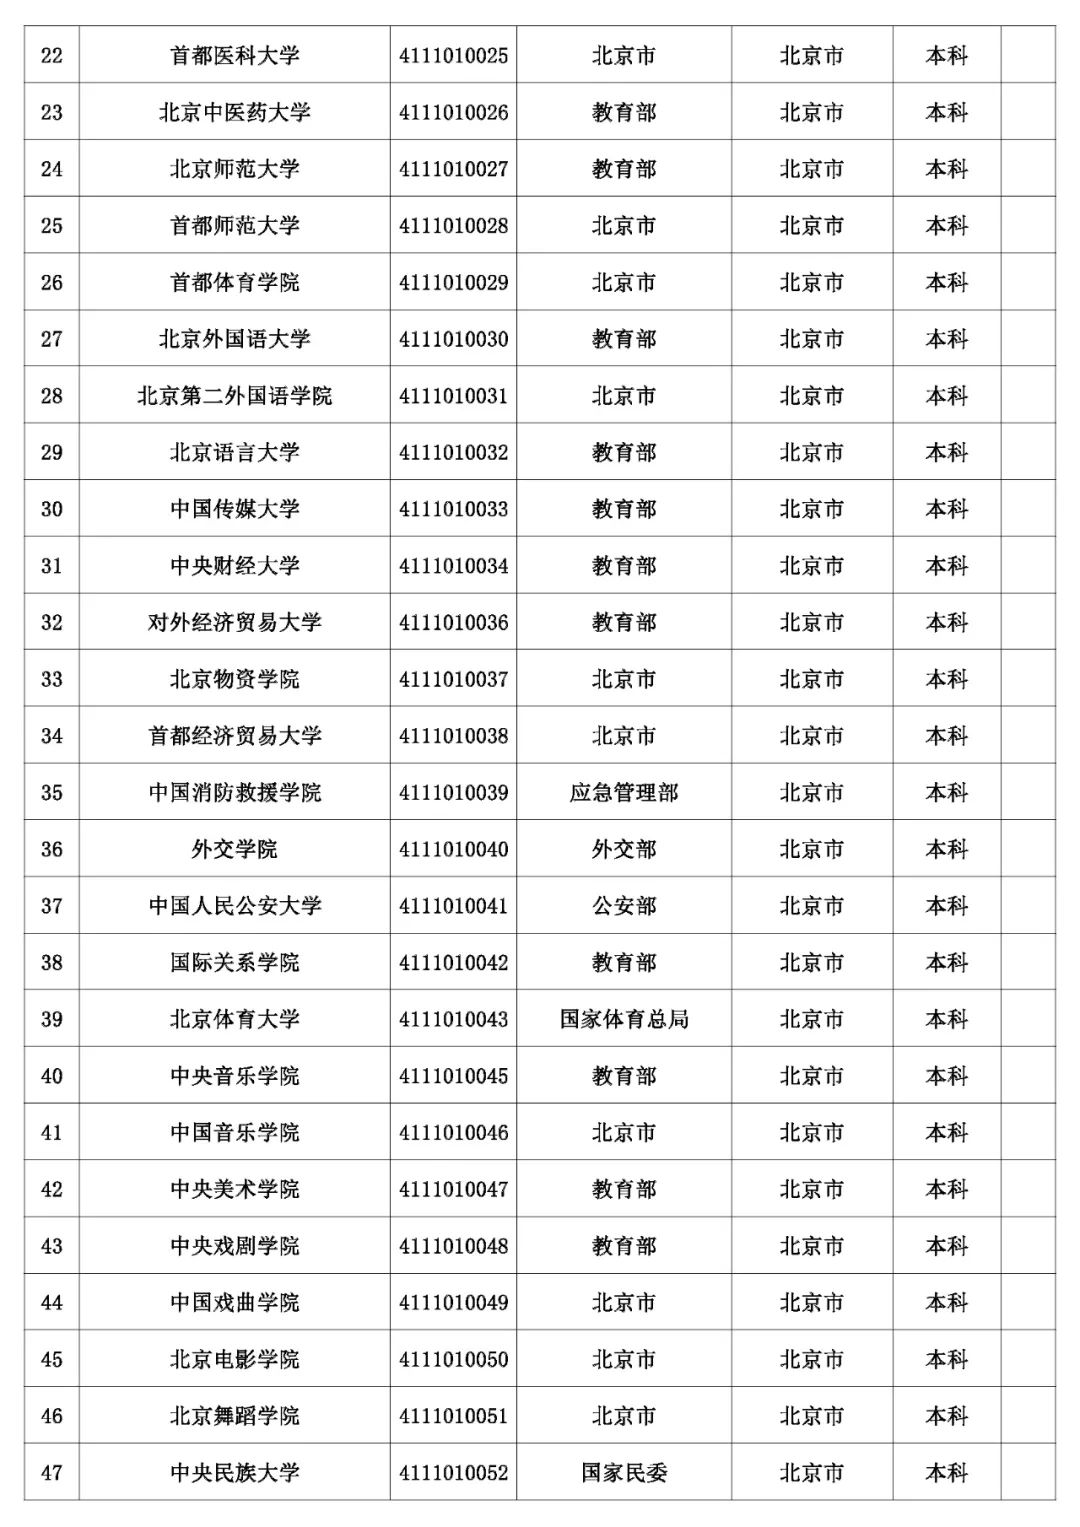 2、云南中专毕业证书9位数字number：中学毕业证书编号是多少位？ 